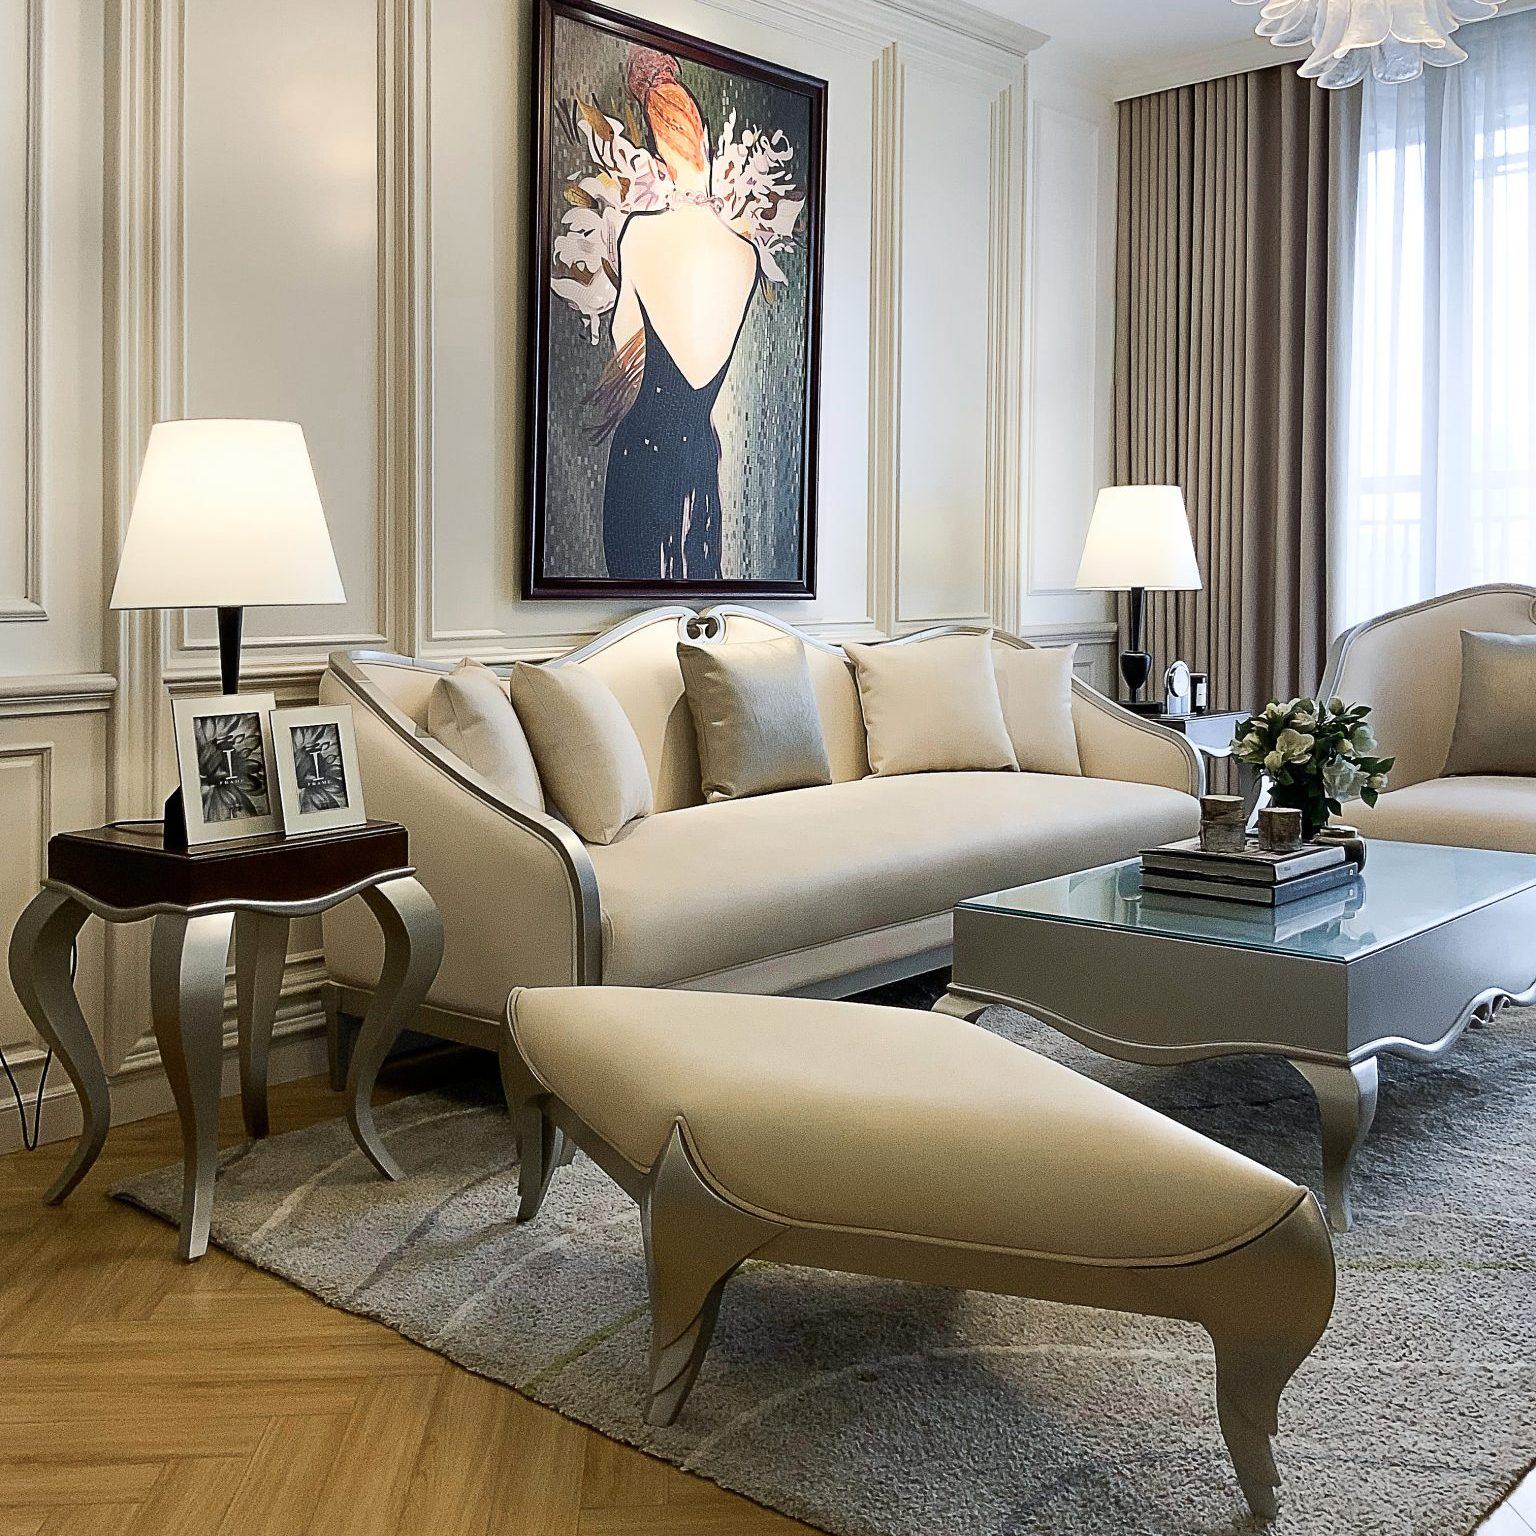 Với thiết kế nội thất phòng khách chung cư hiện đại, bạn sẽ được tận hưởng không gian sống tiện nghi và sang trọng. Nội thất được thiết kế tối ưu hóa không gian, phối màu hài hòa, mang lại cảm giác thoải mái và dễ chịu. Hãy để tinh thần bạn gởi gắm trong không gian sống tuyệt vời này.